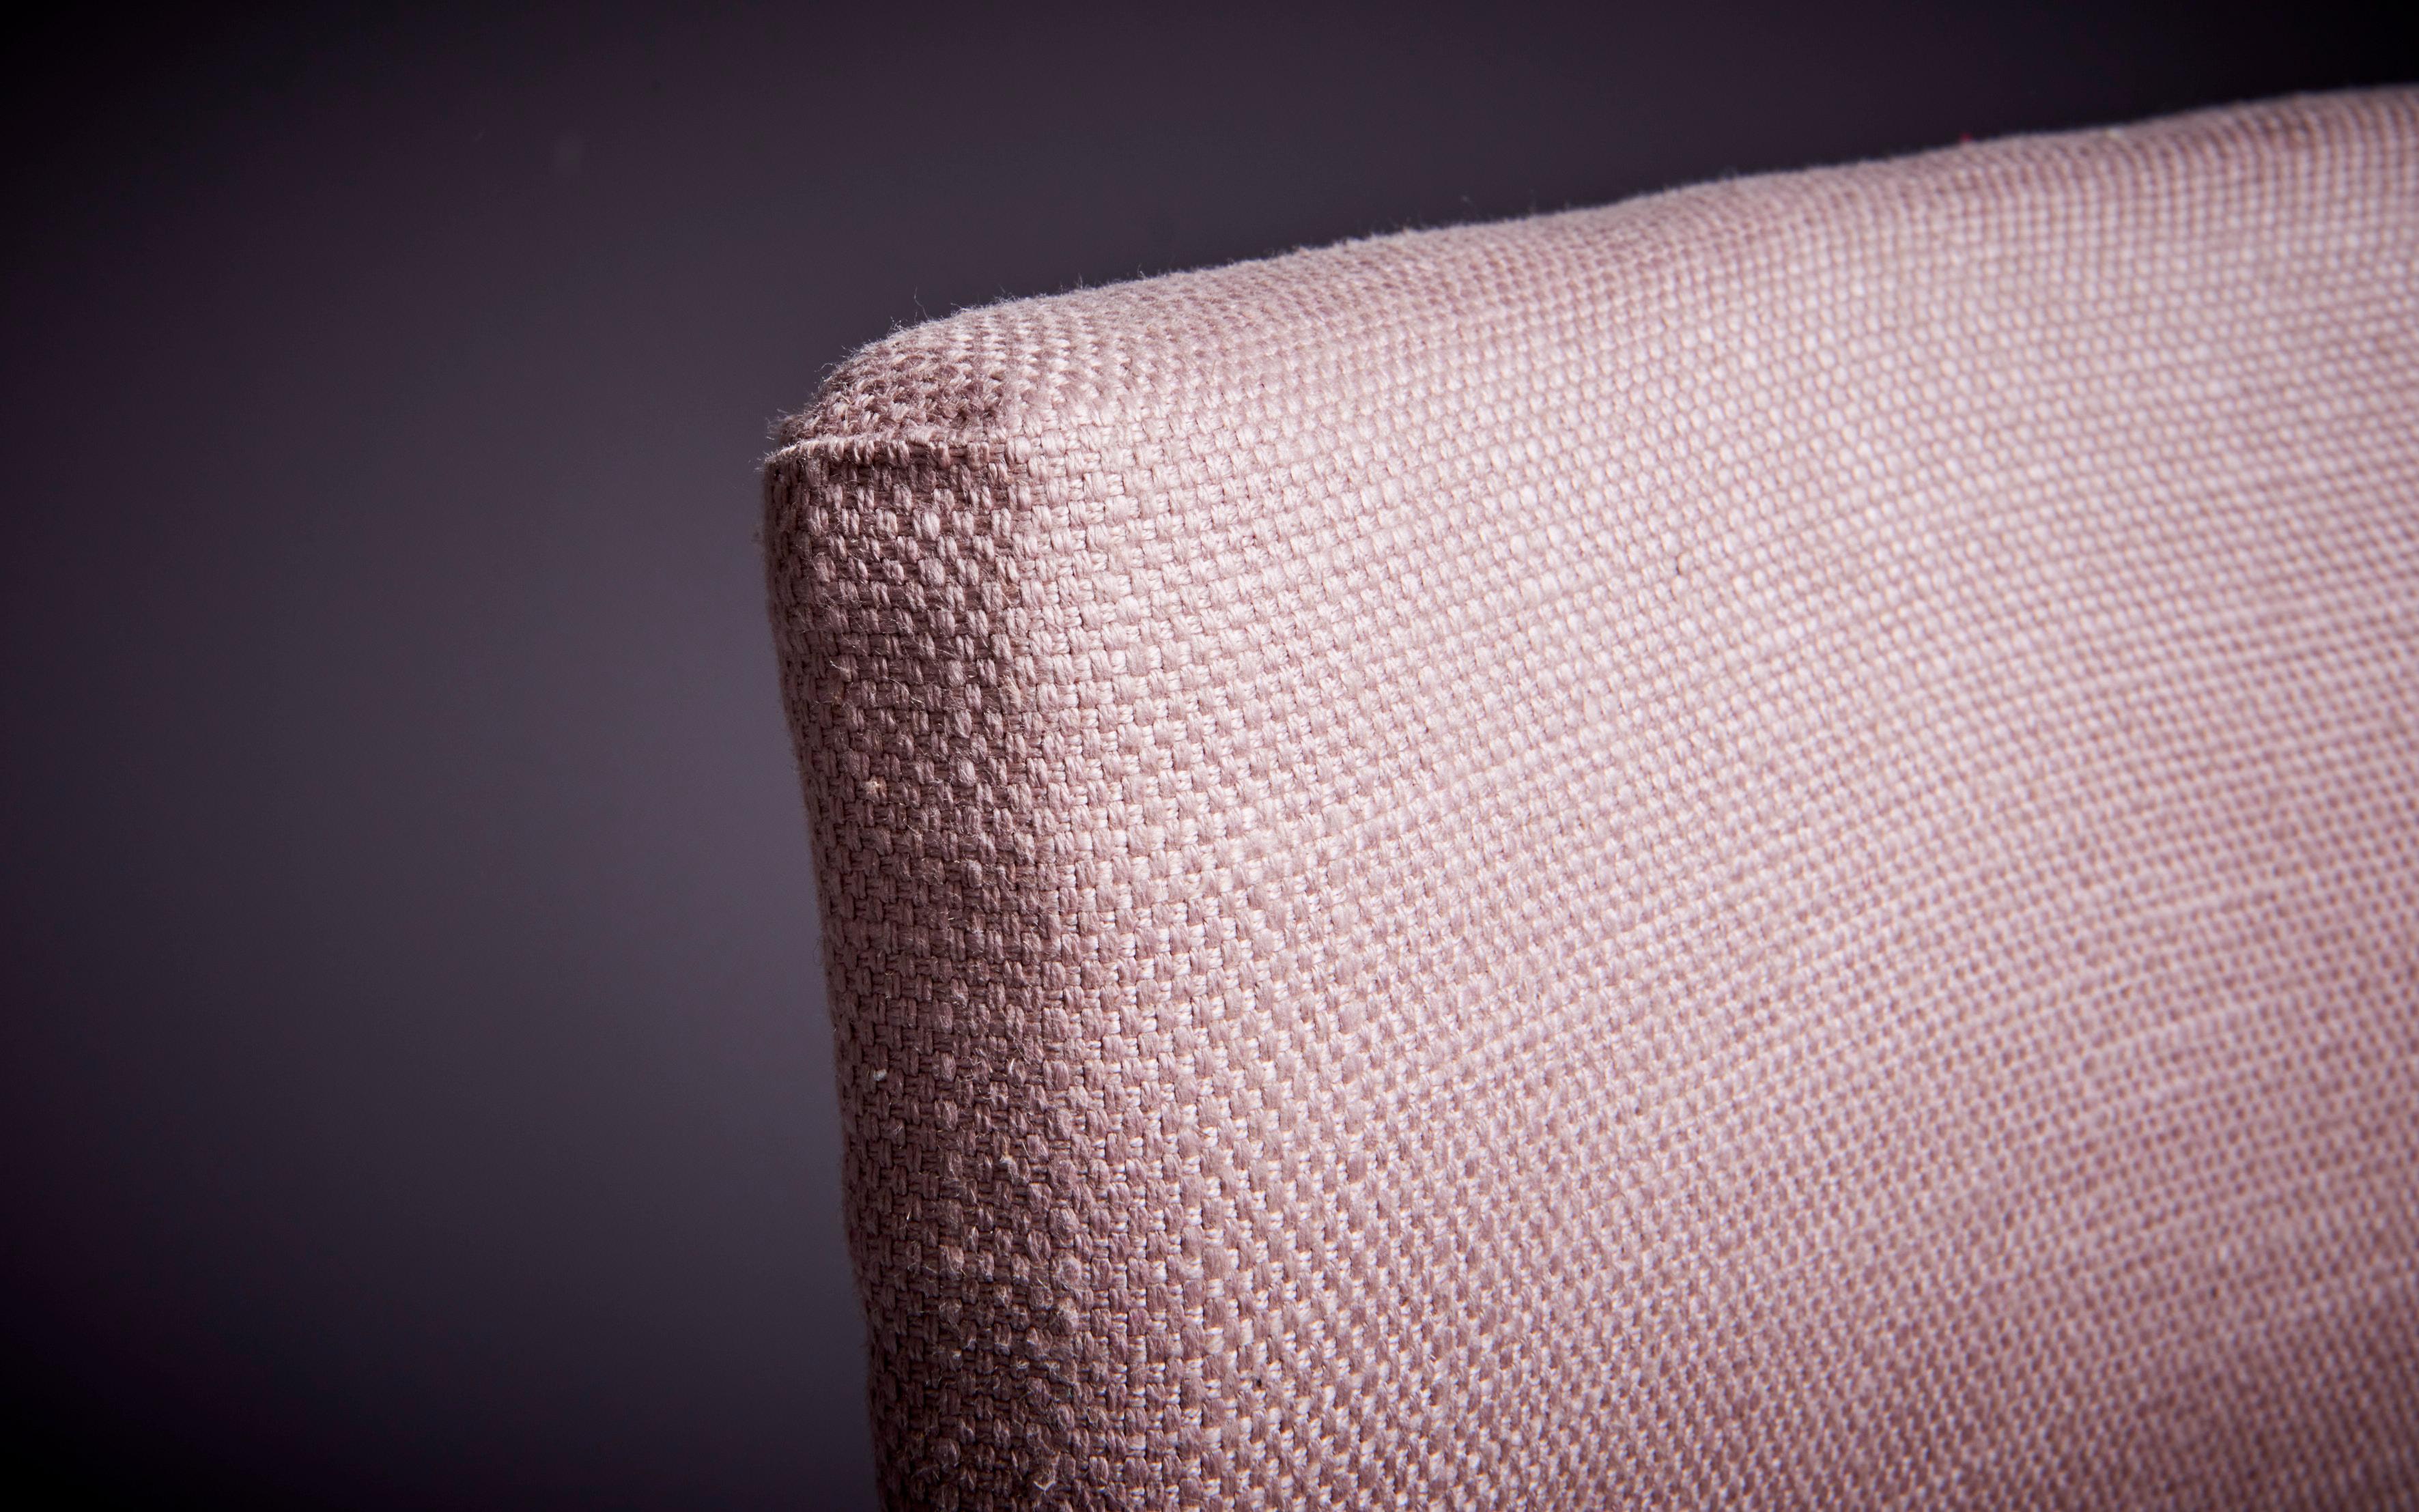 Chaise iconique Elettra de Studio BBPR pour Arflex avec une base tubulaire en métal noir qui se recoupe sous l'assise. La chaise a été récemment recouverte d'un délicat tissu rose pâle.

La chaise Elettra est une chaise moderniste conçue par BBPR